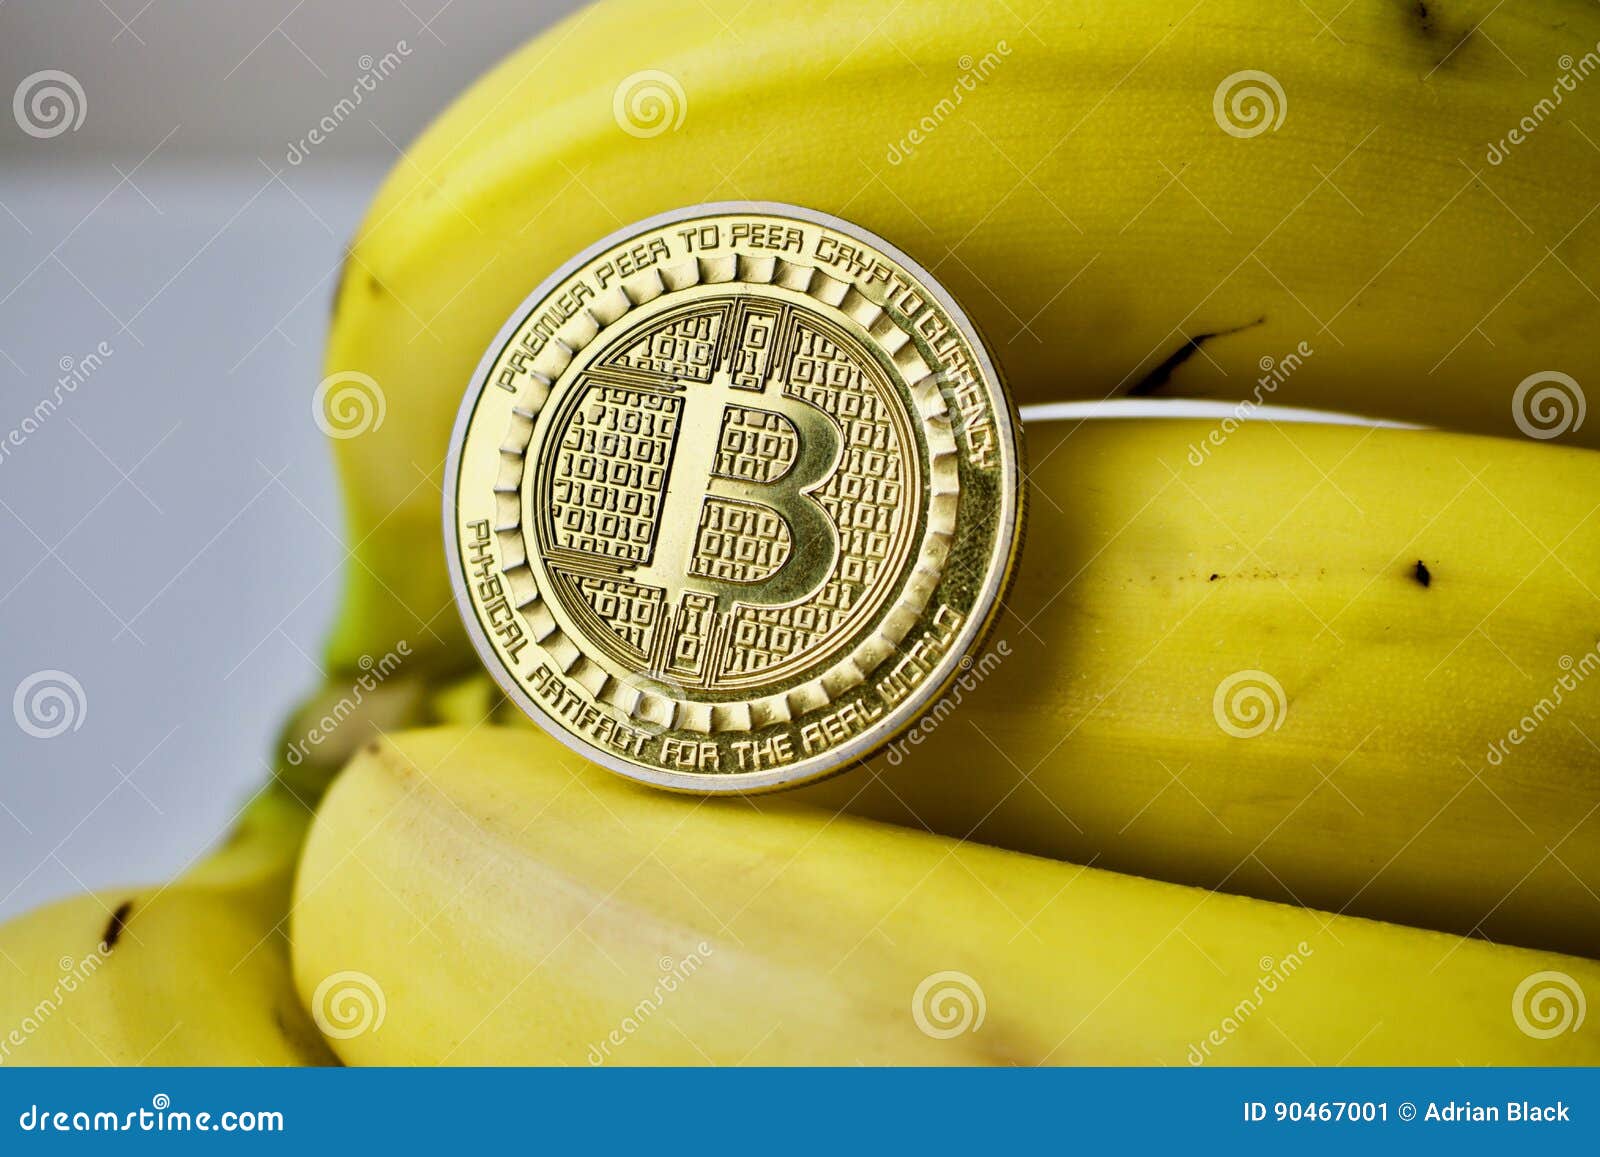 bitcoin banana